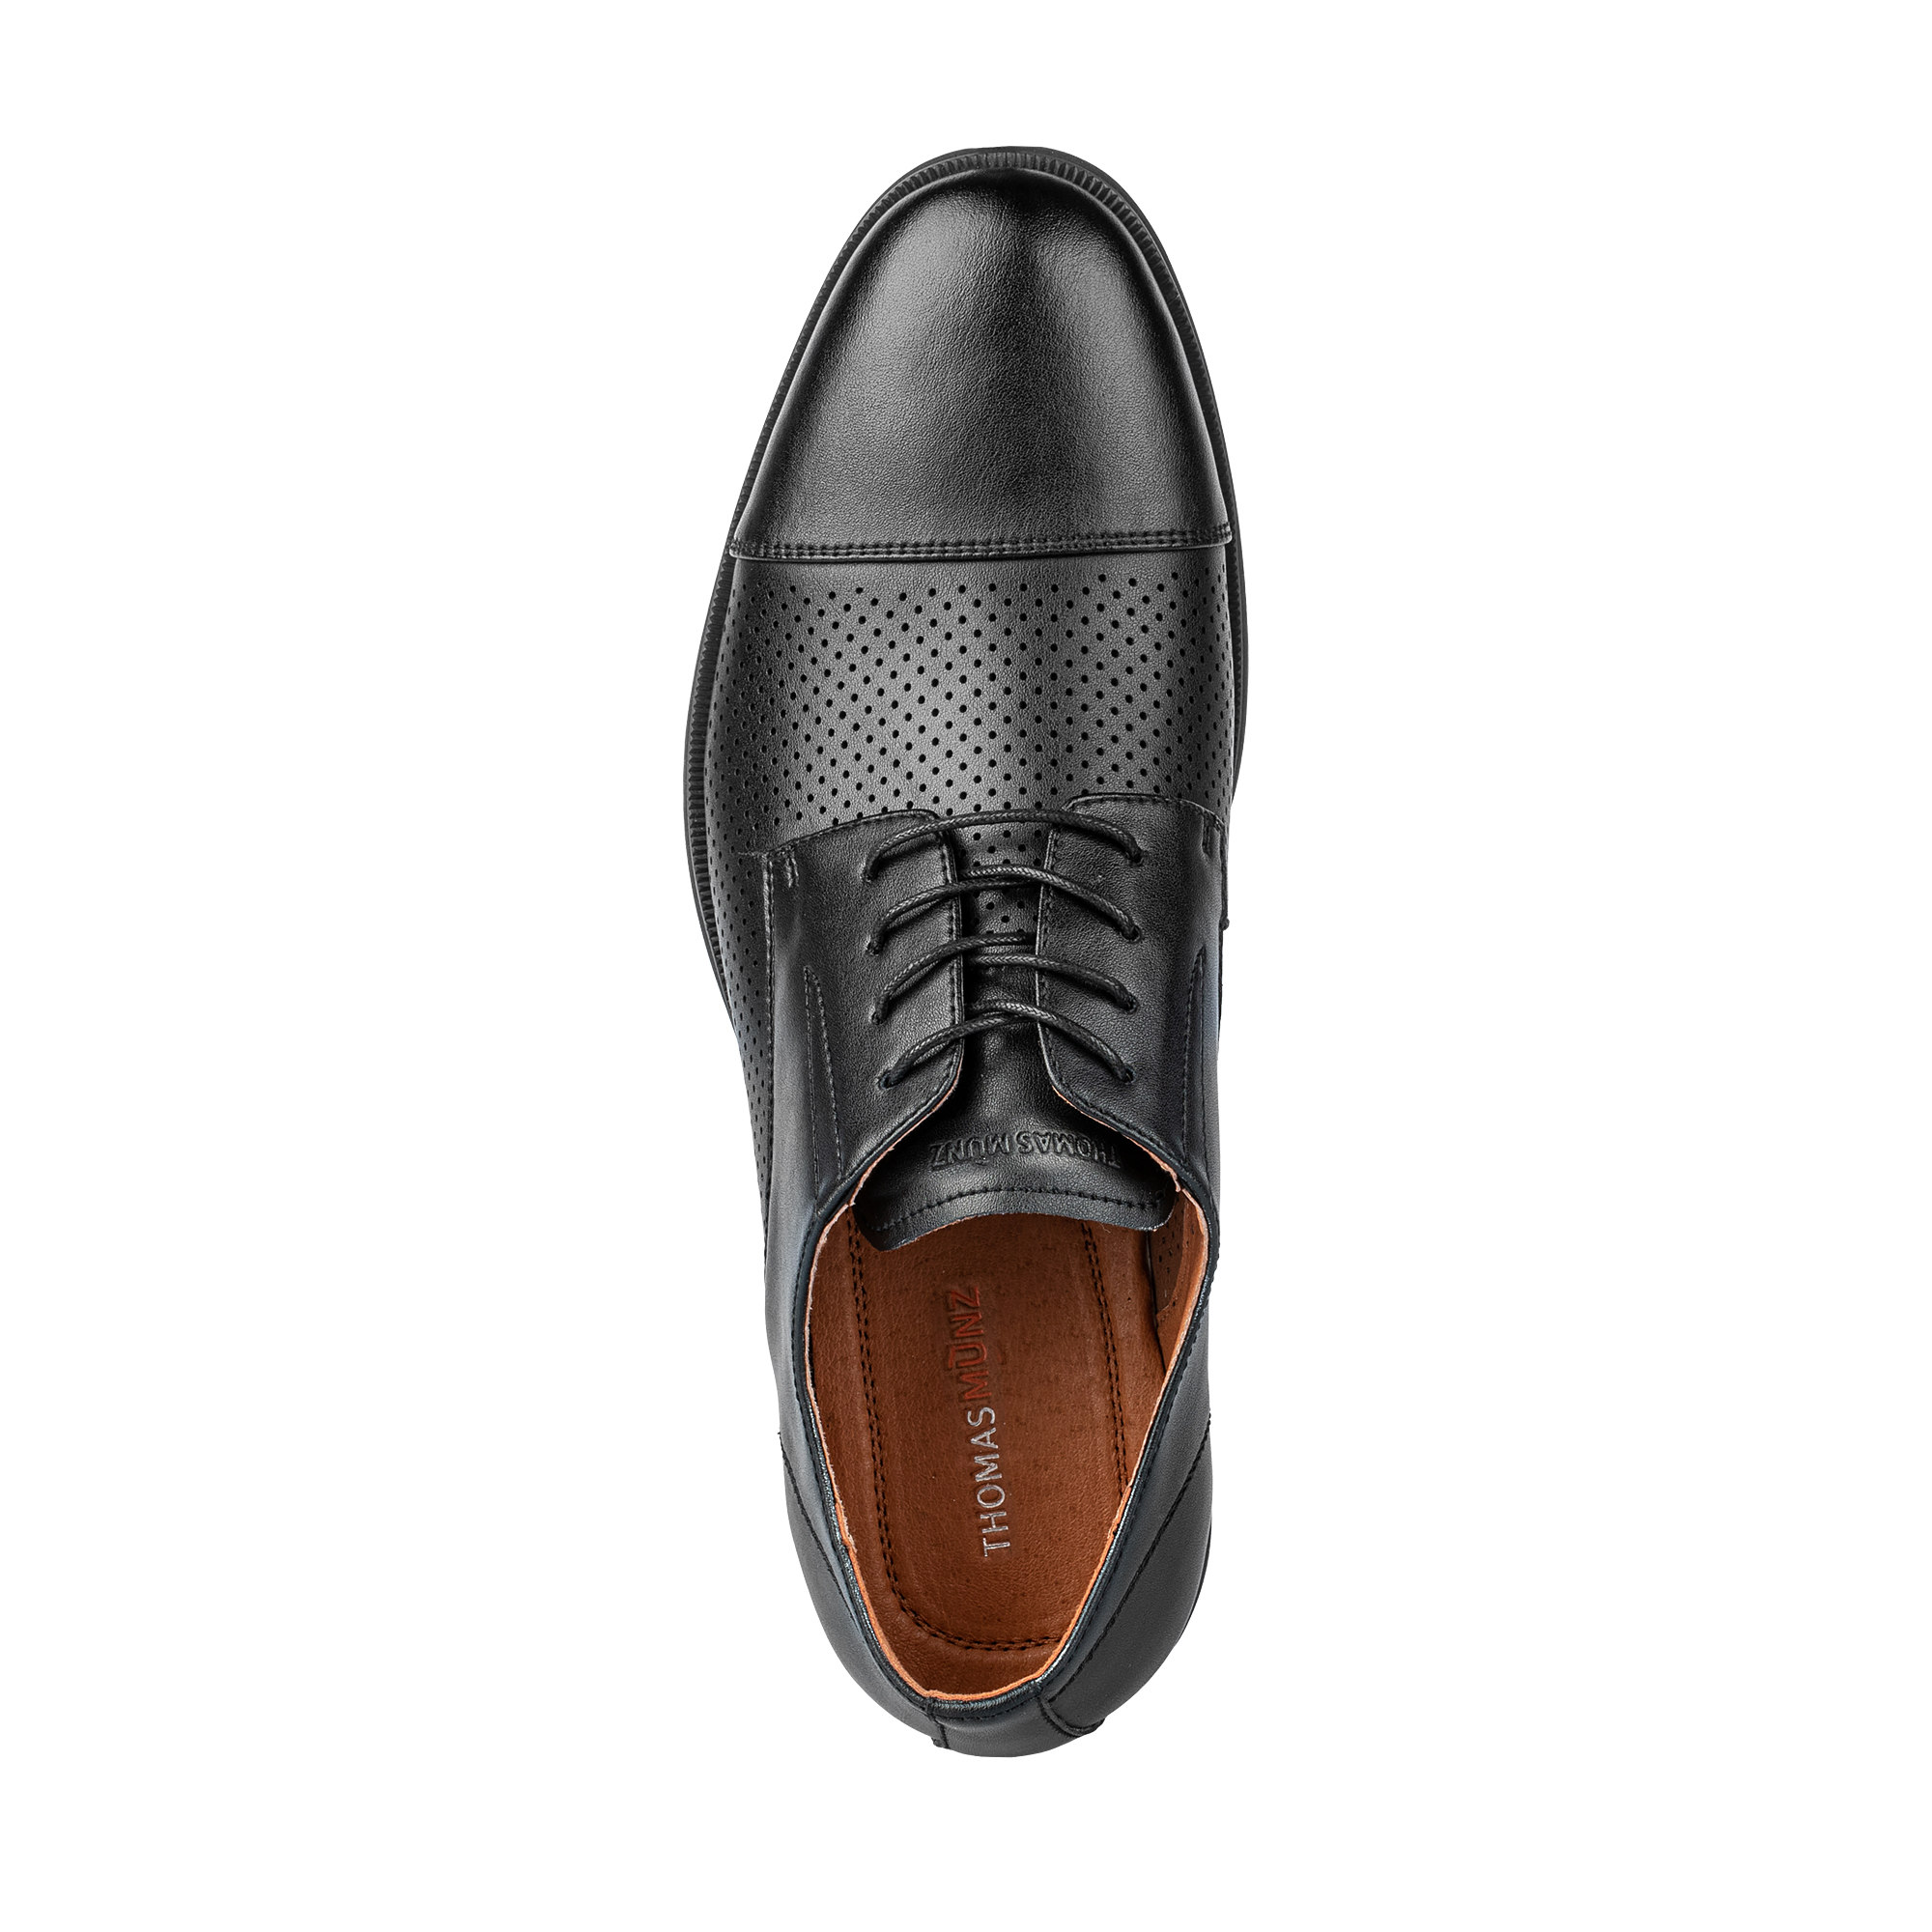 Туфли/полуботинки Thomas Munz 104-615A-1602, цвет черный, размер 43 - фото 5